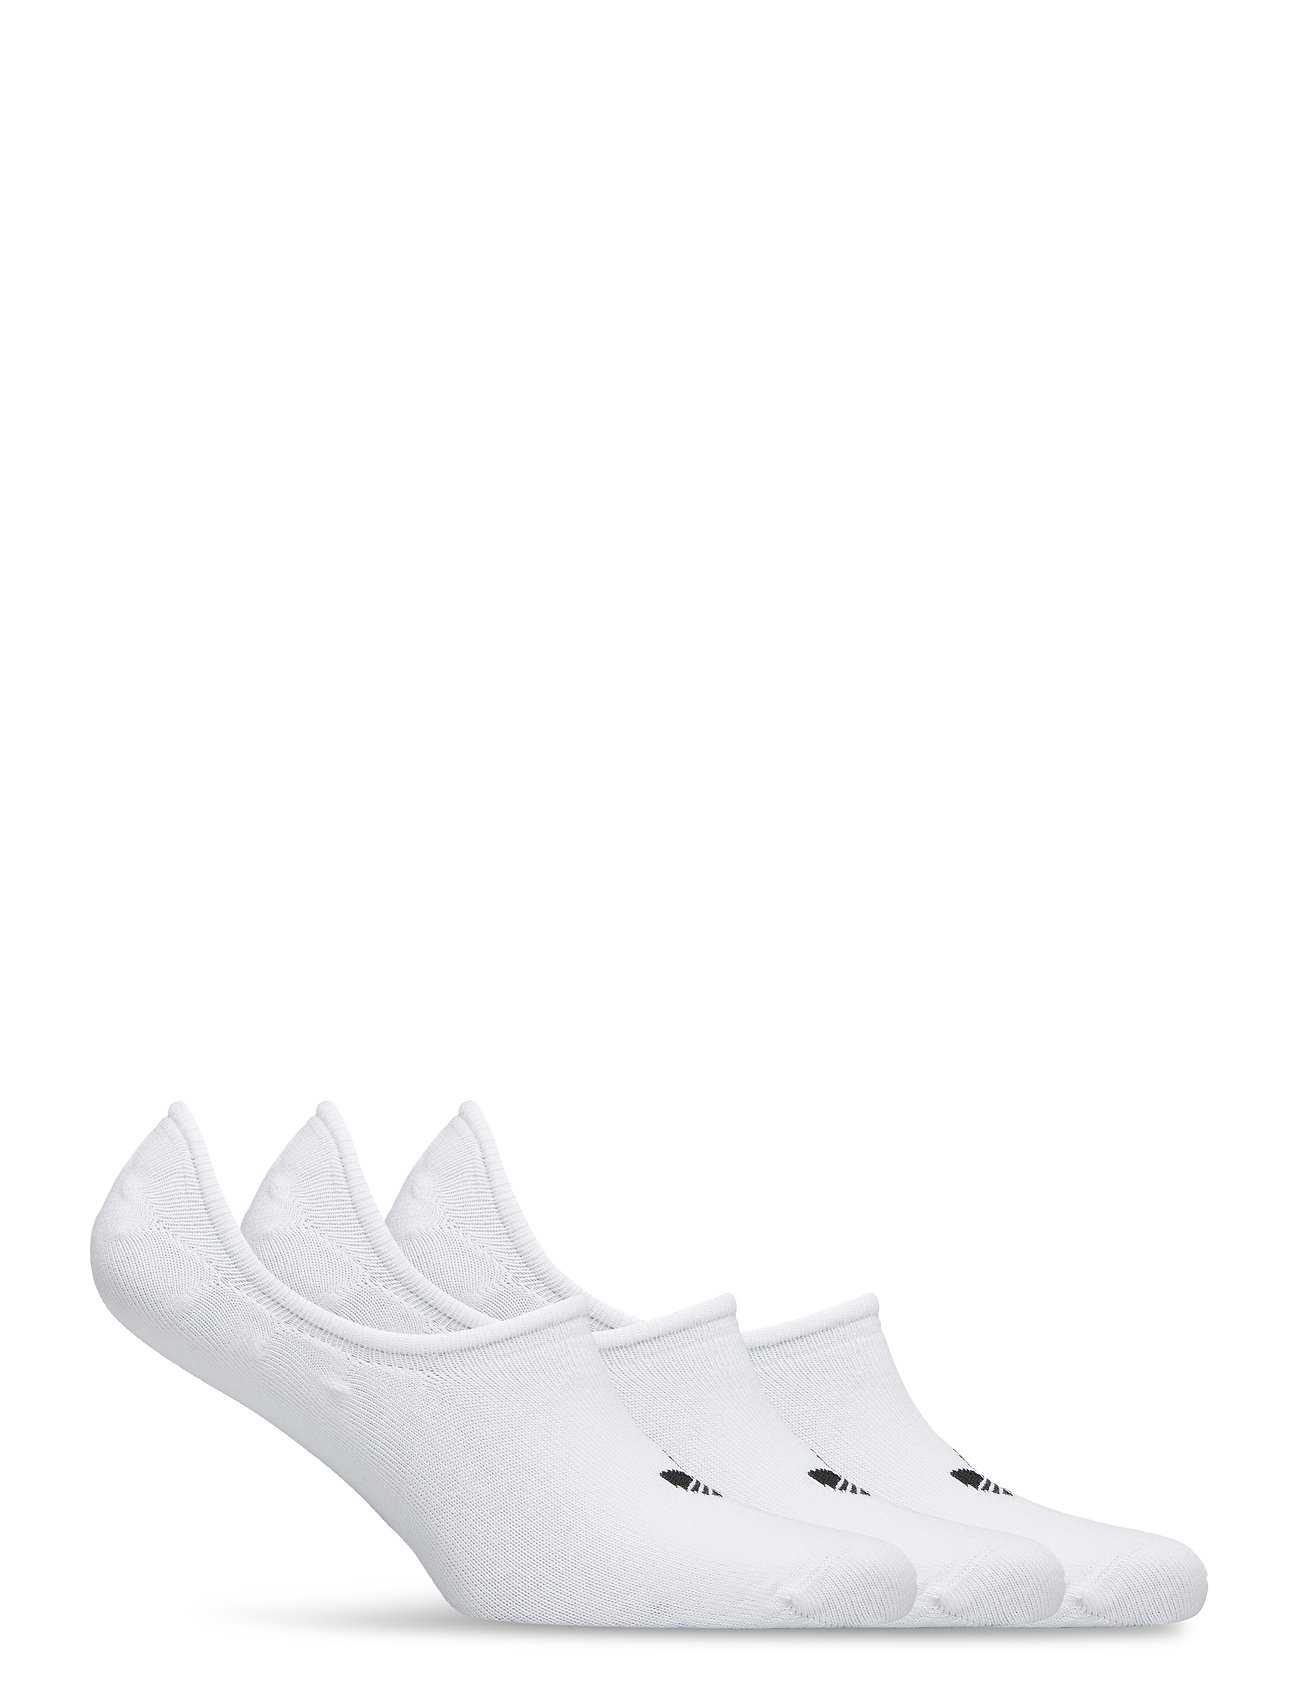 adidas Originals - LOW CUT SOCK 3 PAIR PACK - ankelstrømper - white - 1